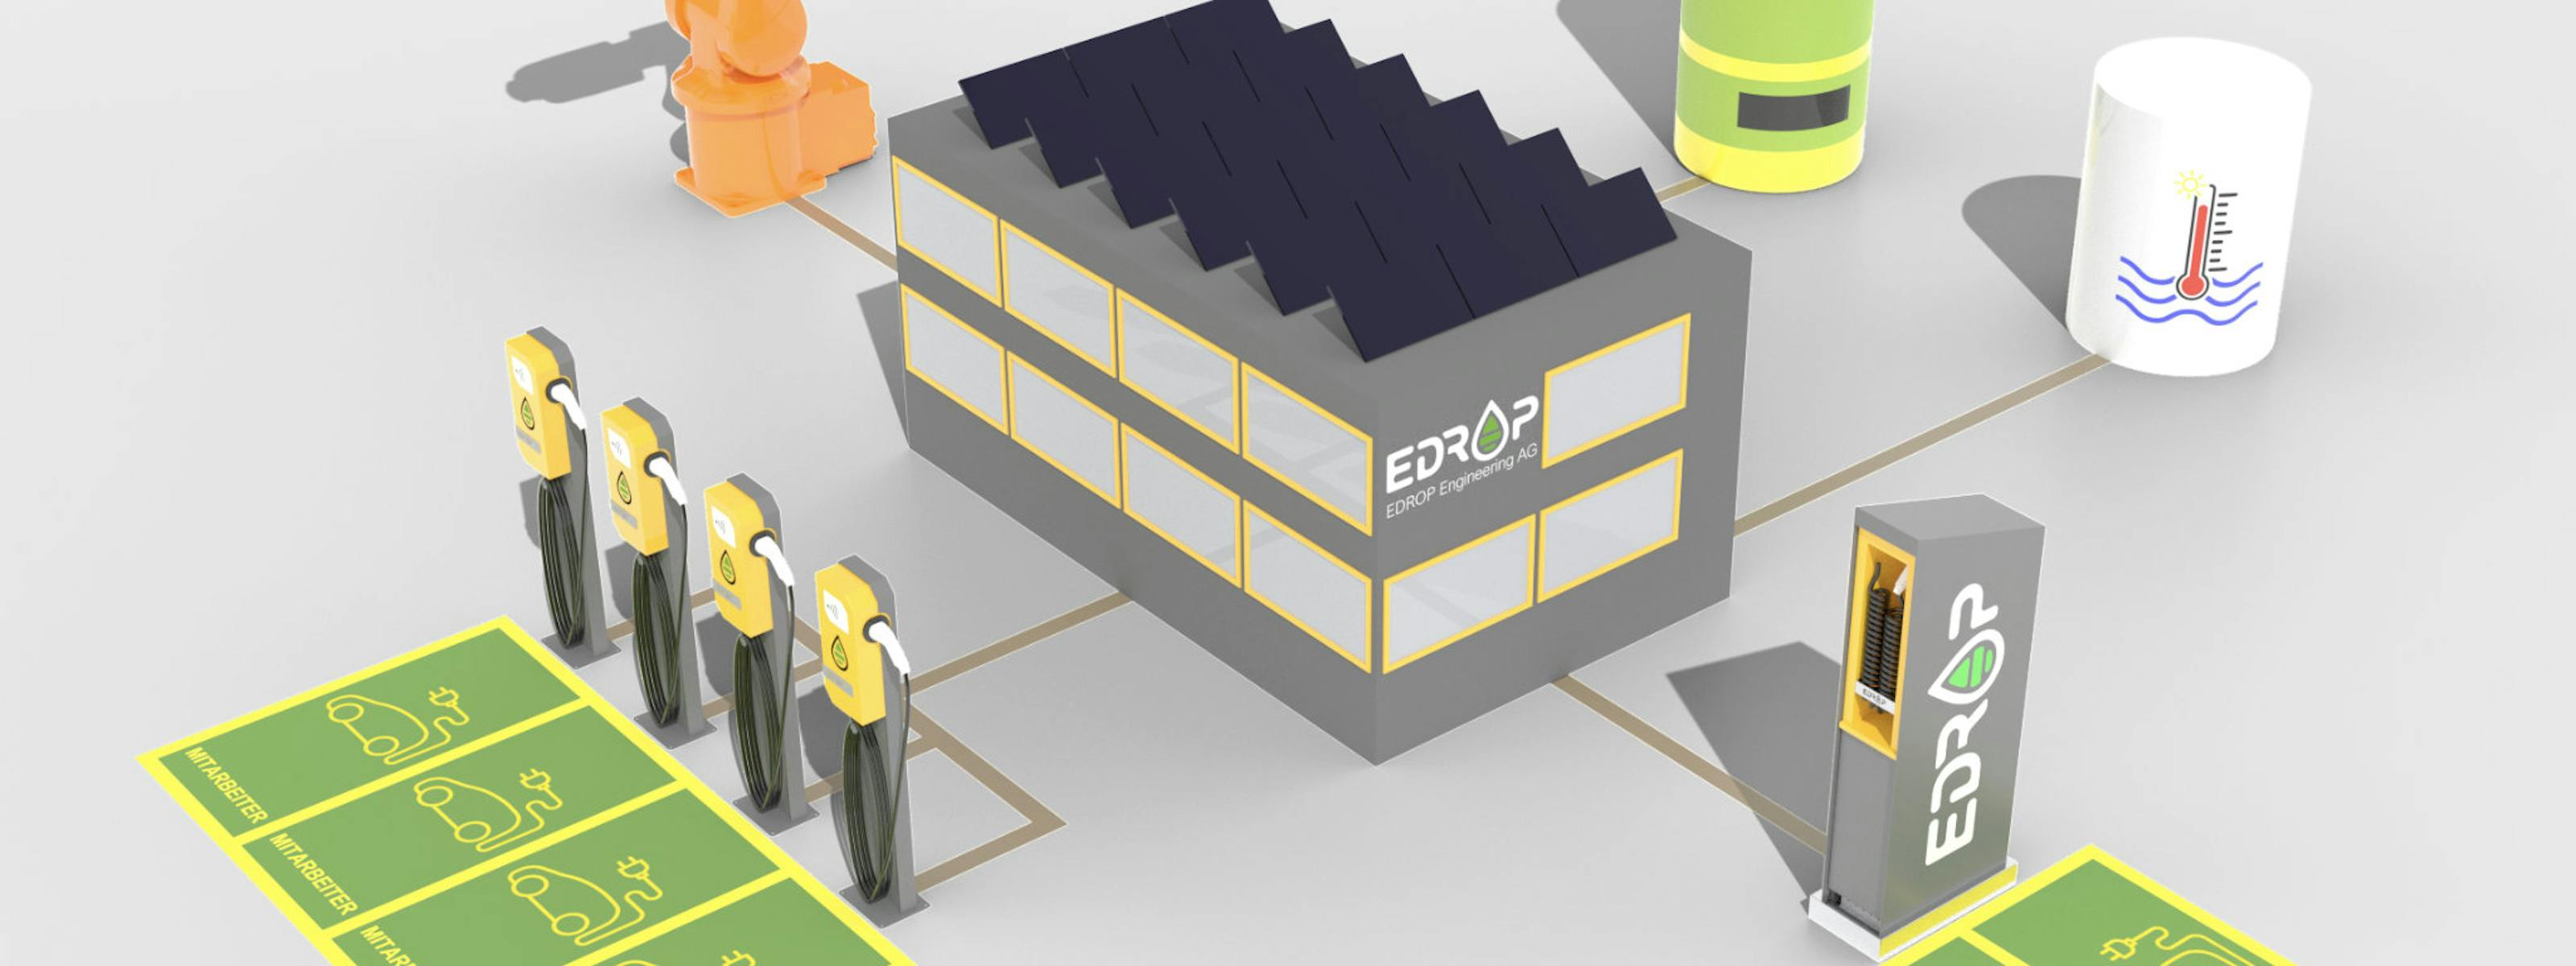 EDROP Energiemanagement + Lastmanagement